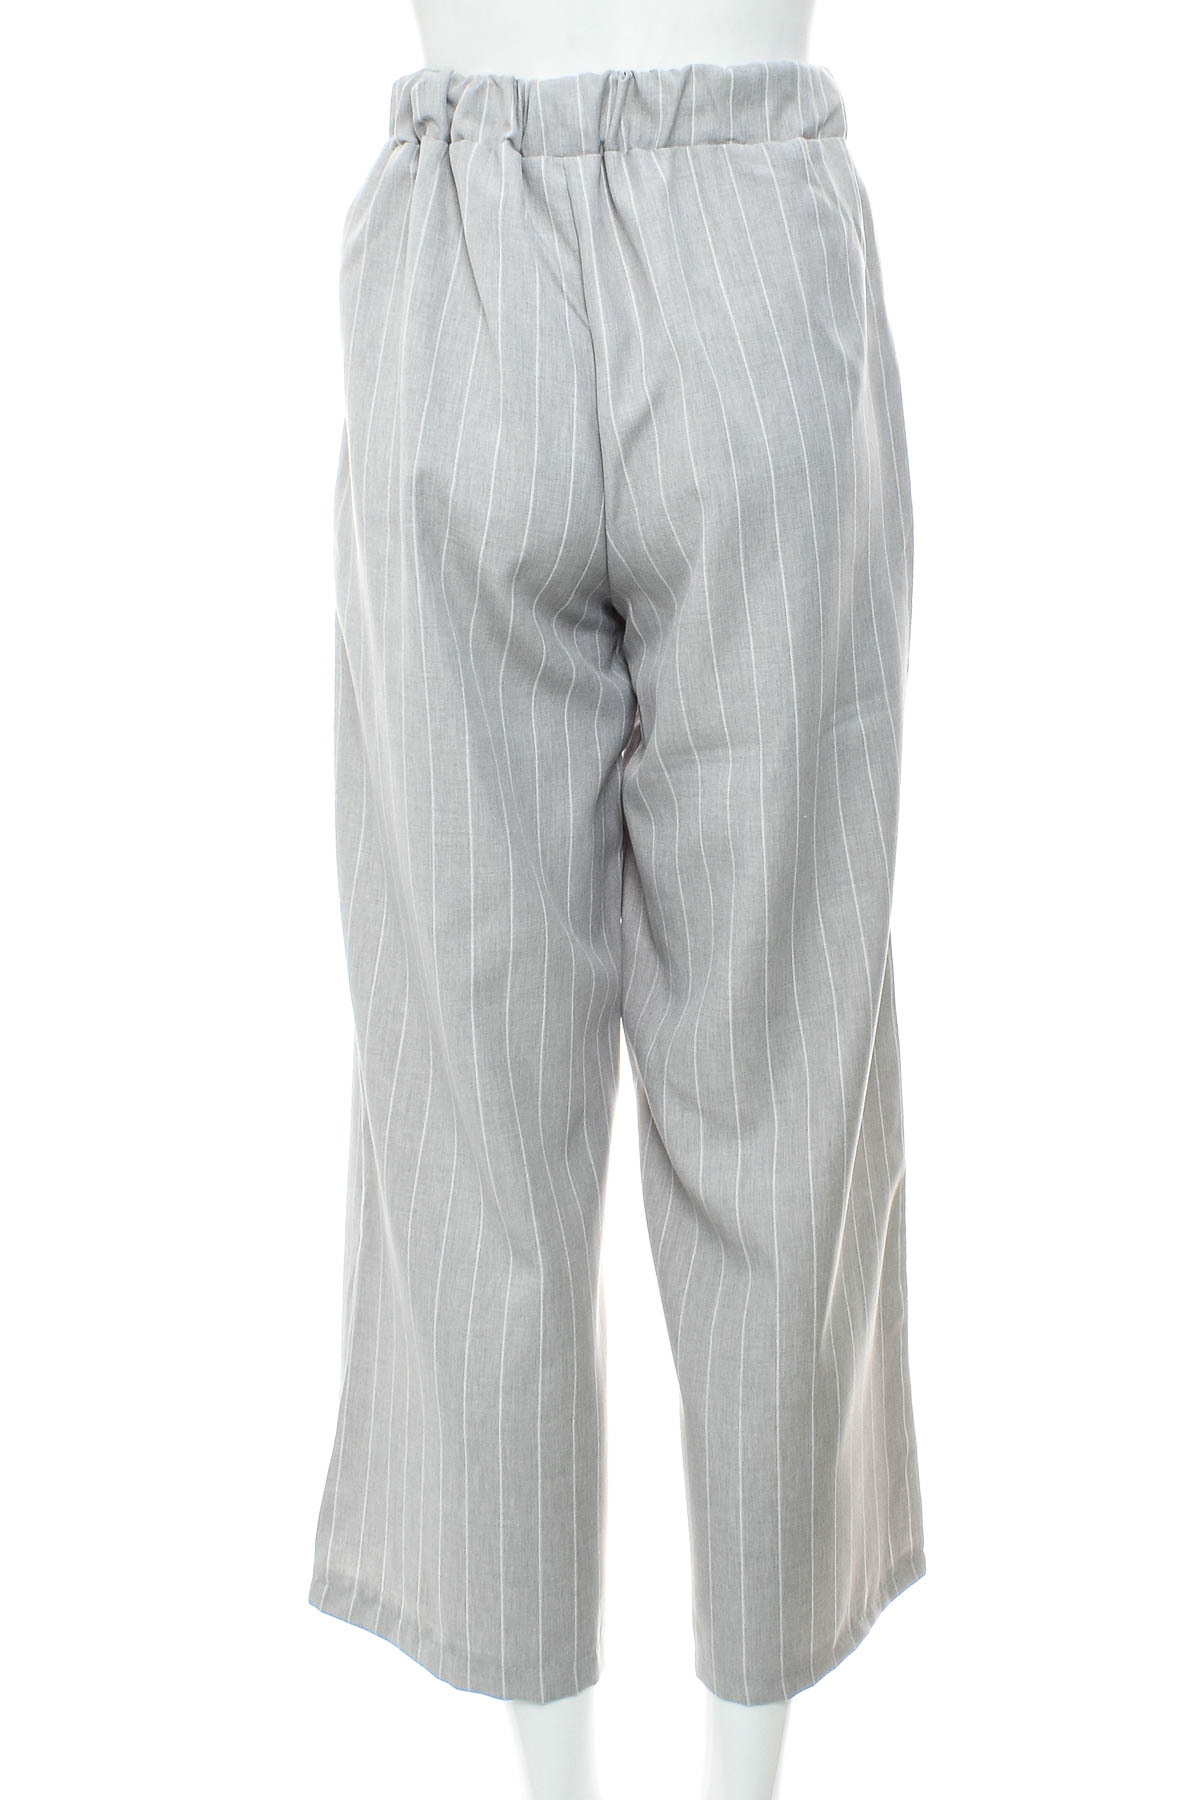 Women's trousers - Zebra - 1